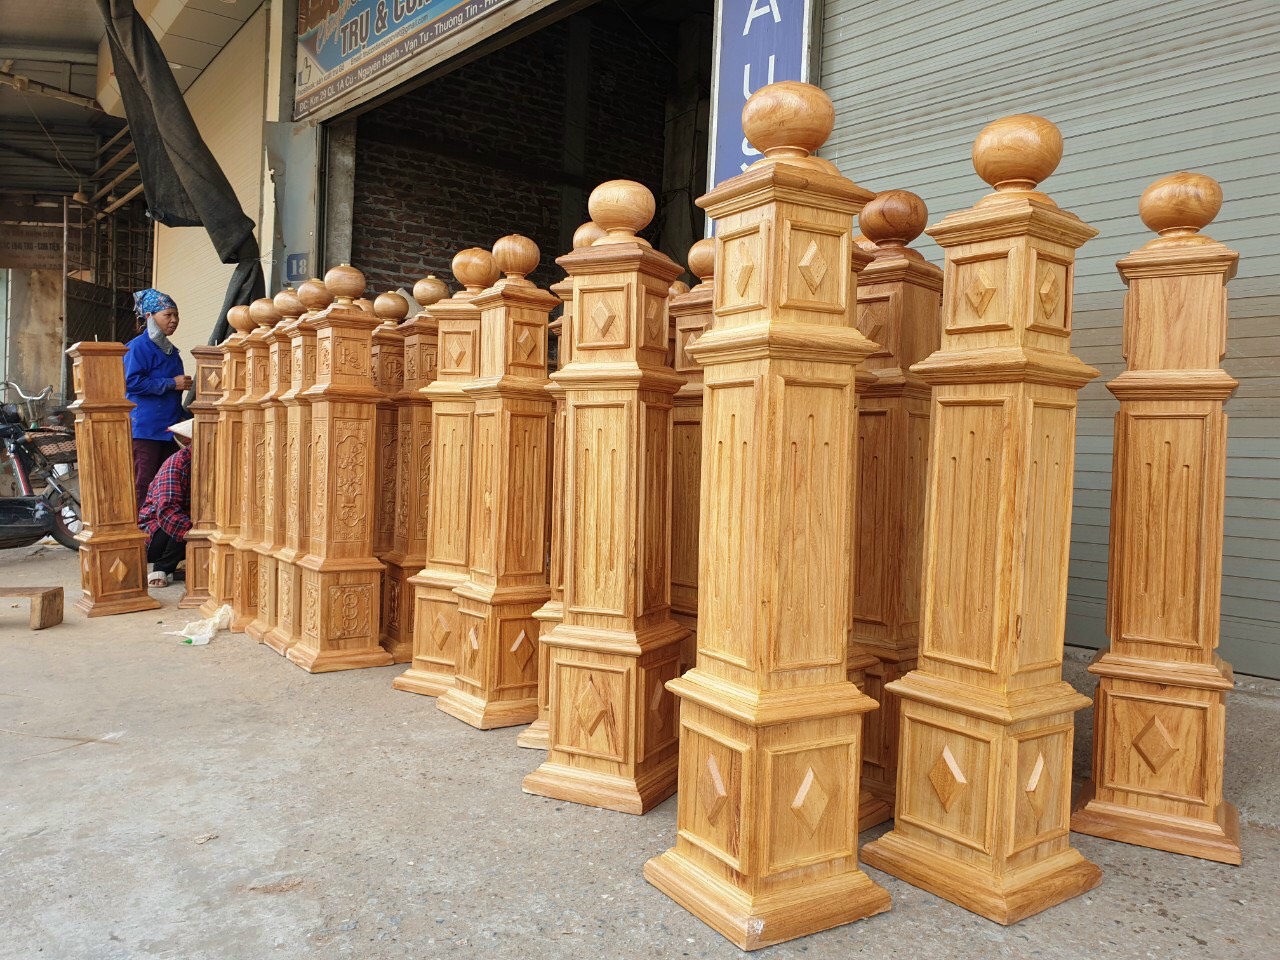 Báo giá trụ cầu thang gỗ Lim tại Hà Nội